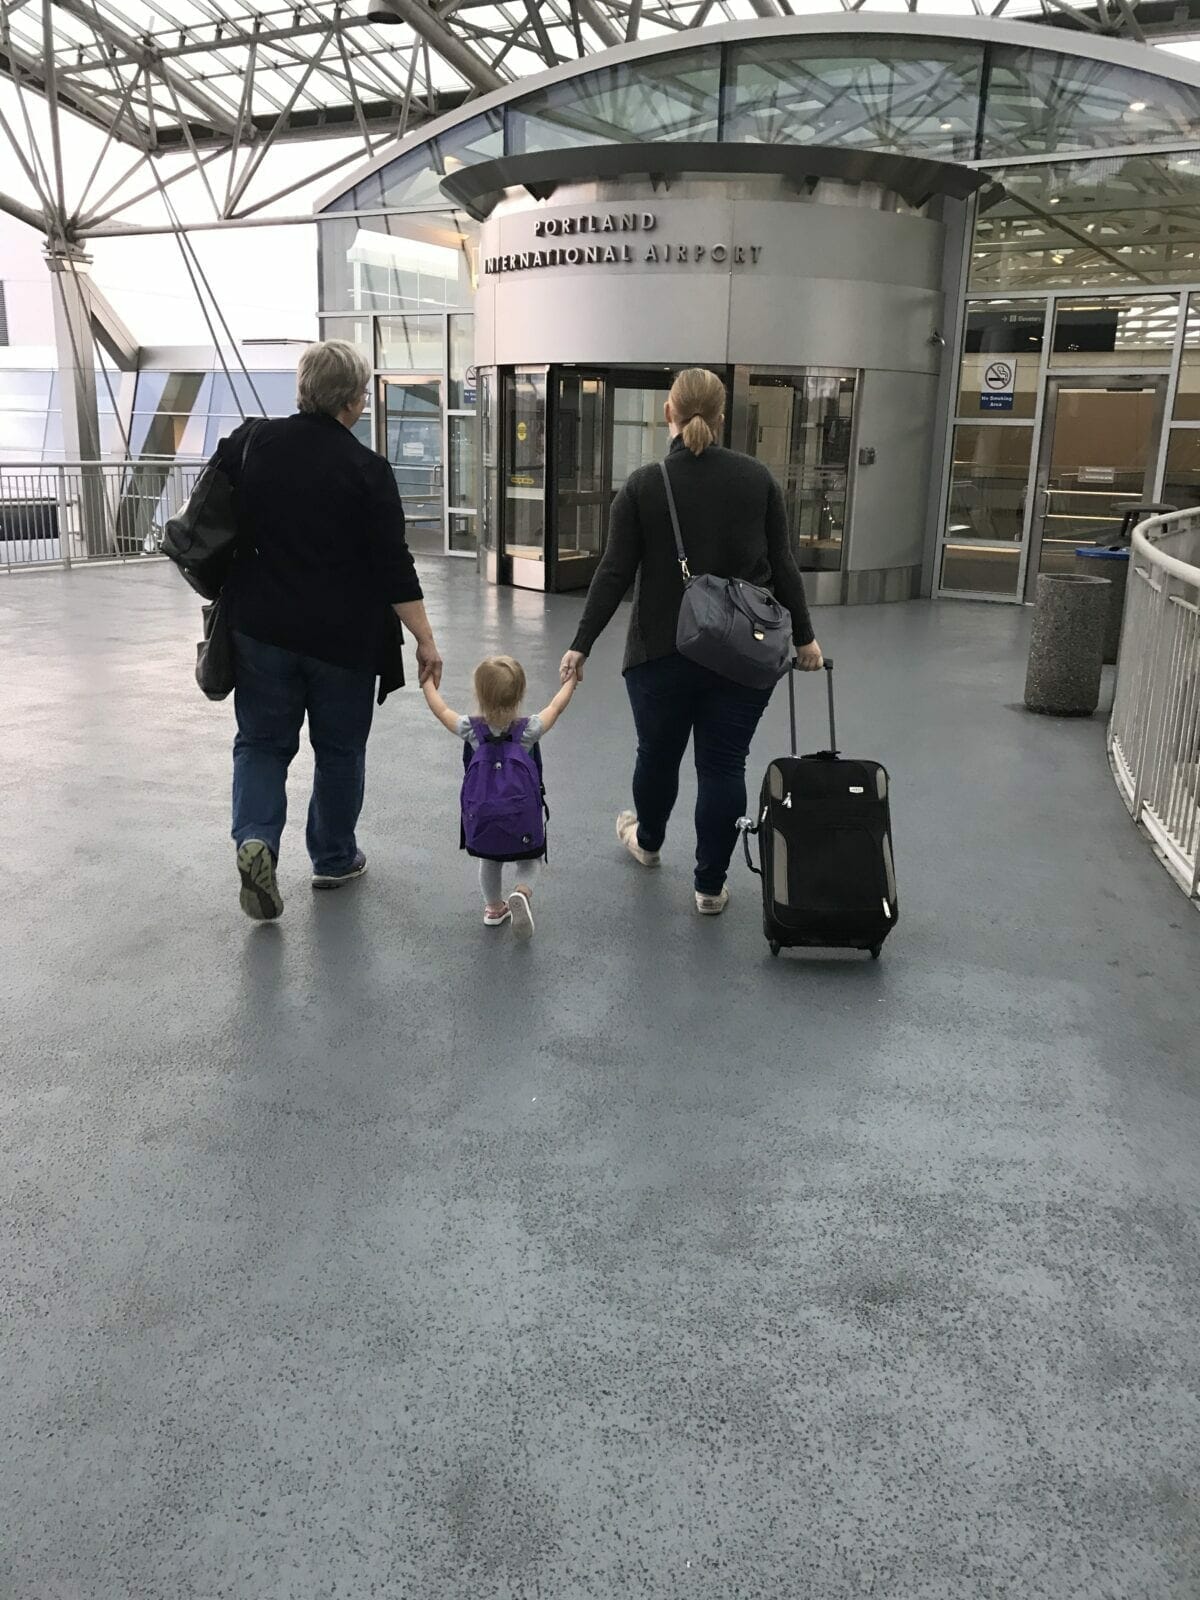 Family walking through airport image.